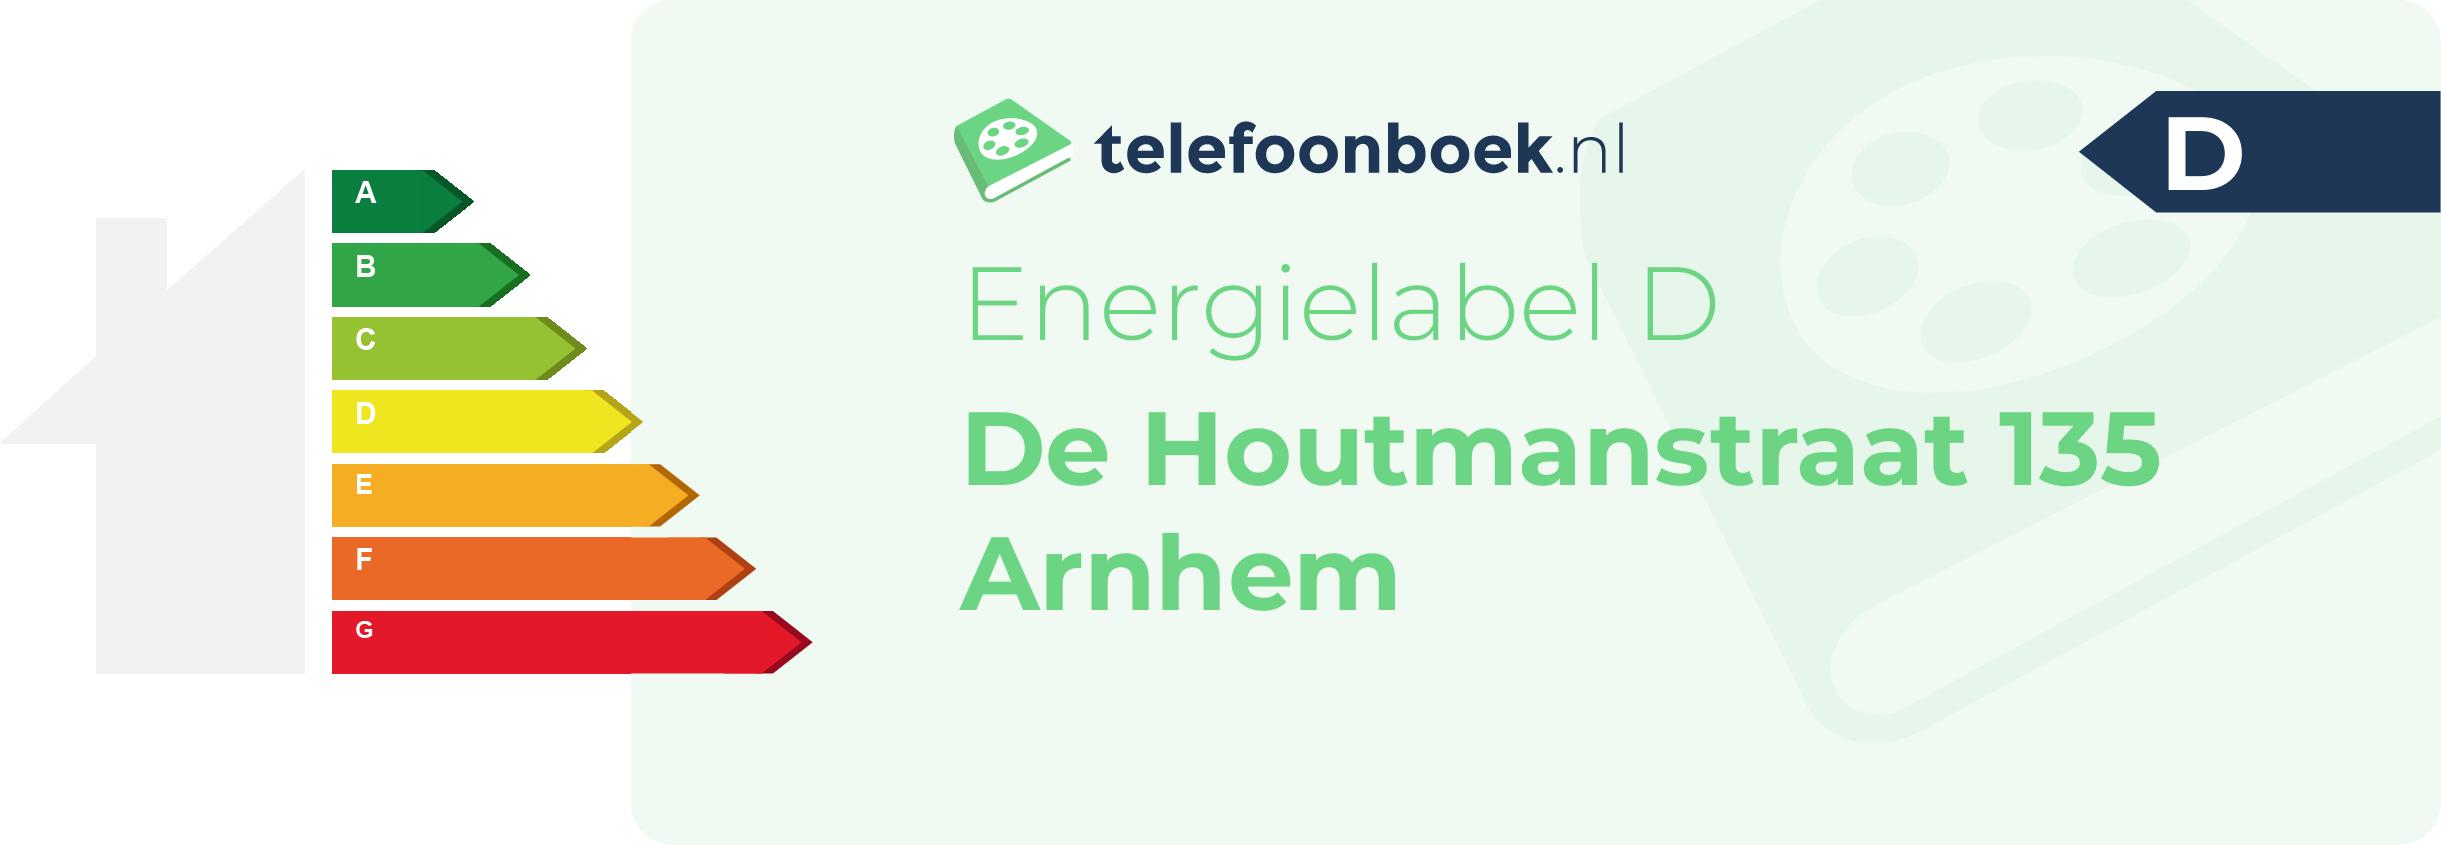 Energielabel De Houtmanstraat 135 Arnhem